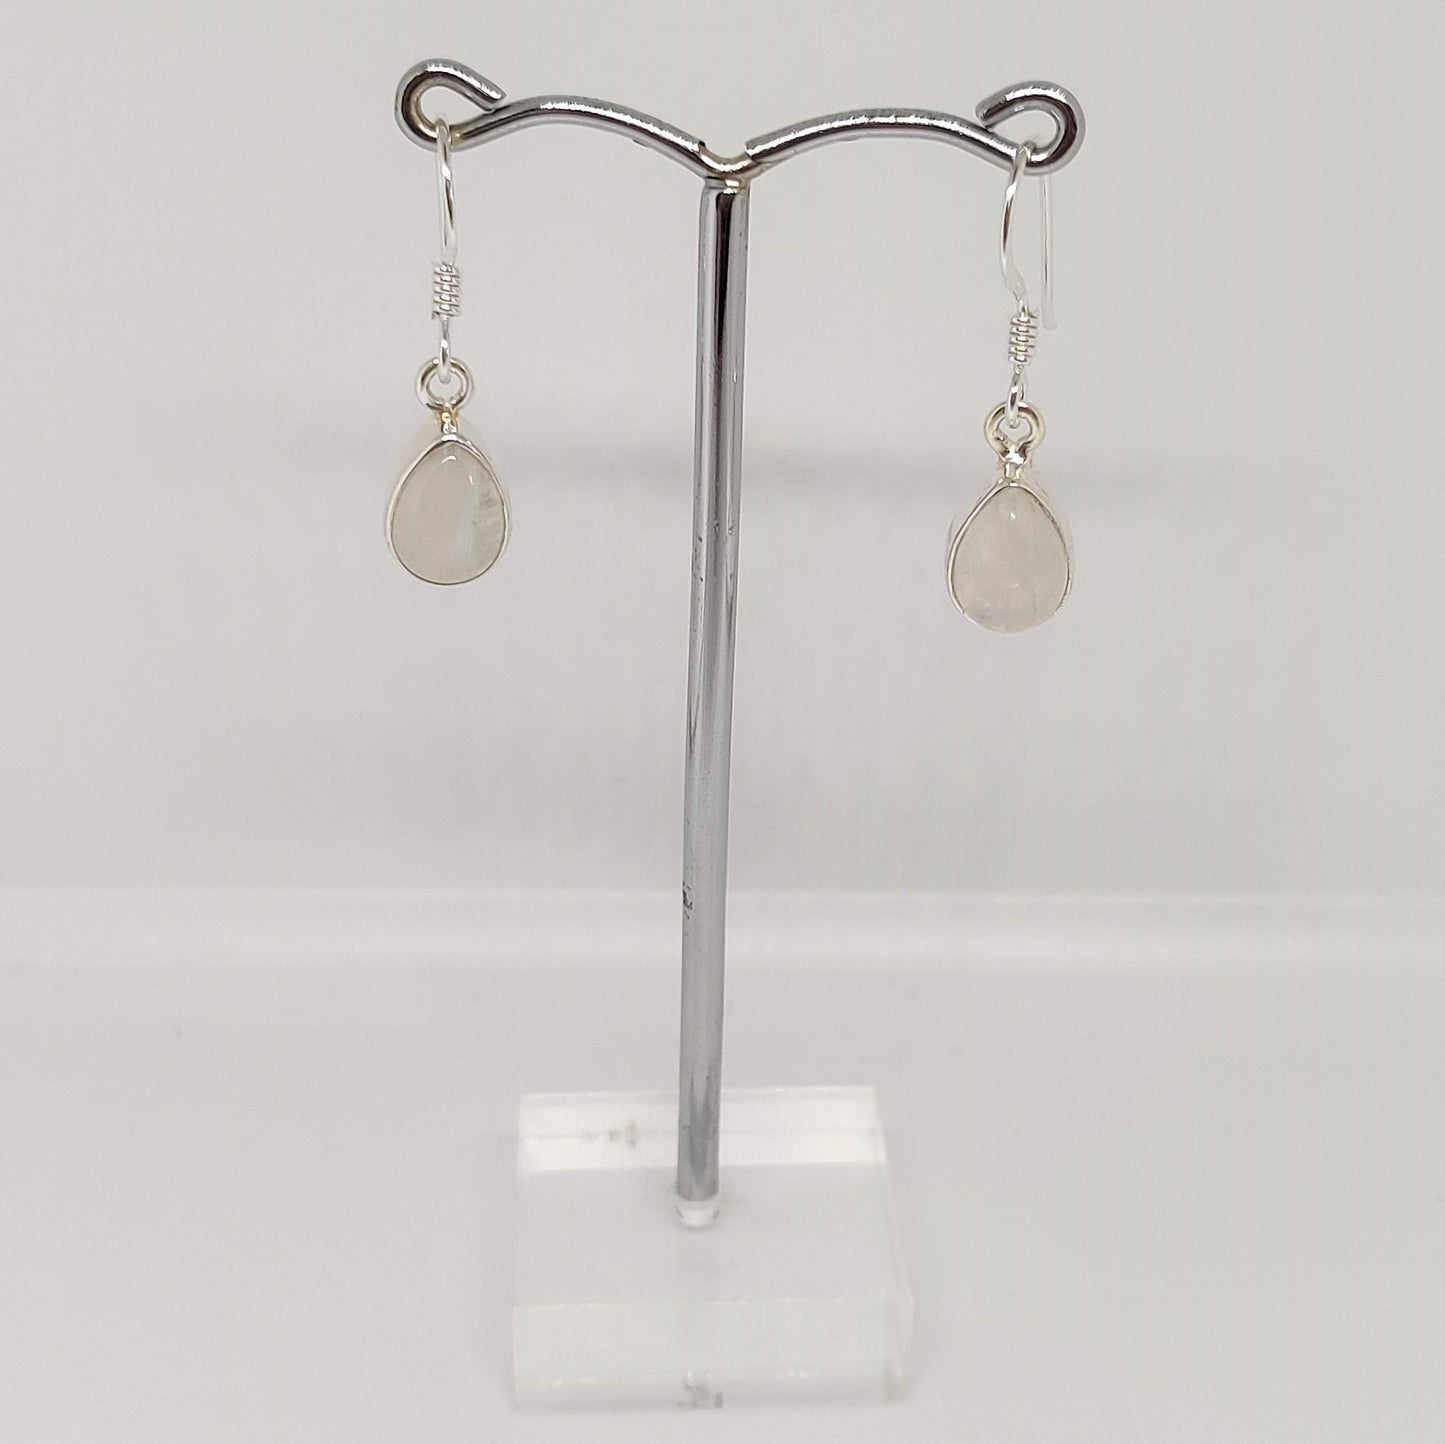 Teardrop Moonstone 925 Sterling Silver Dangle Earrings - Rivendell Shop